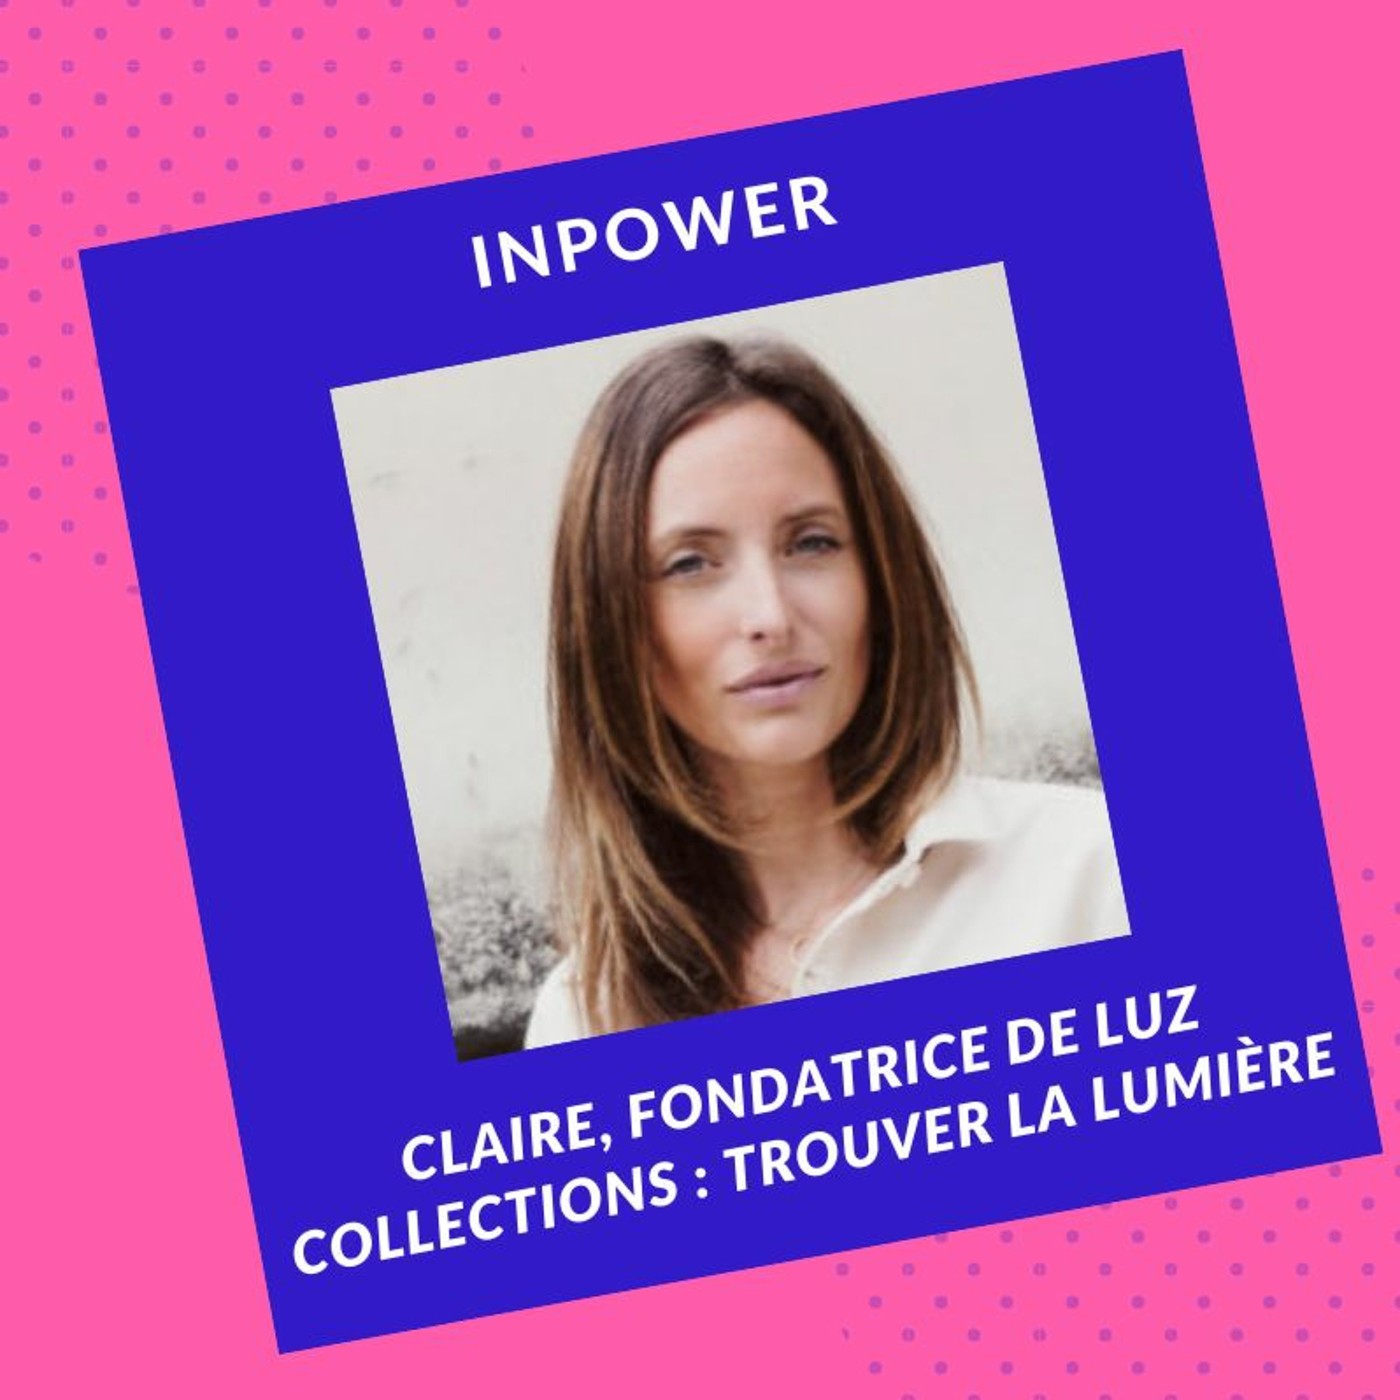 Claire, fondatrice de Luz Collections - Trouver la lumière